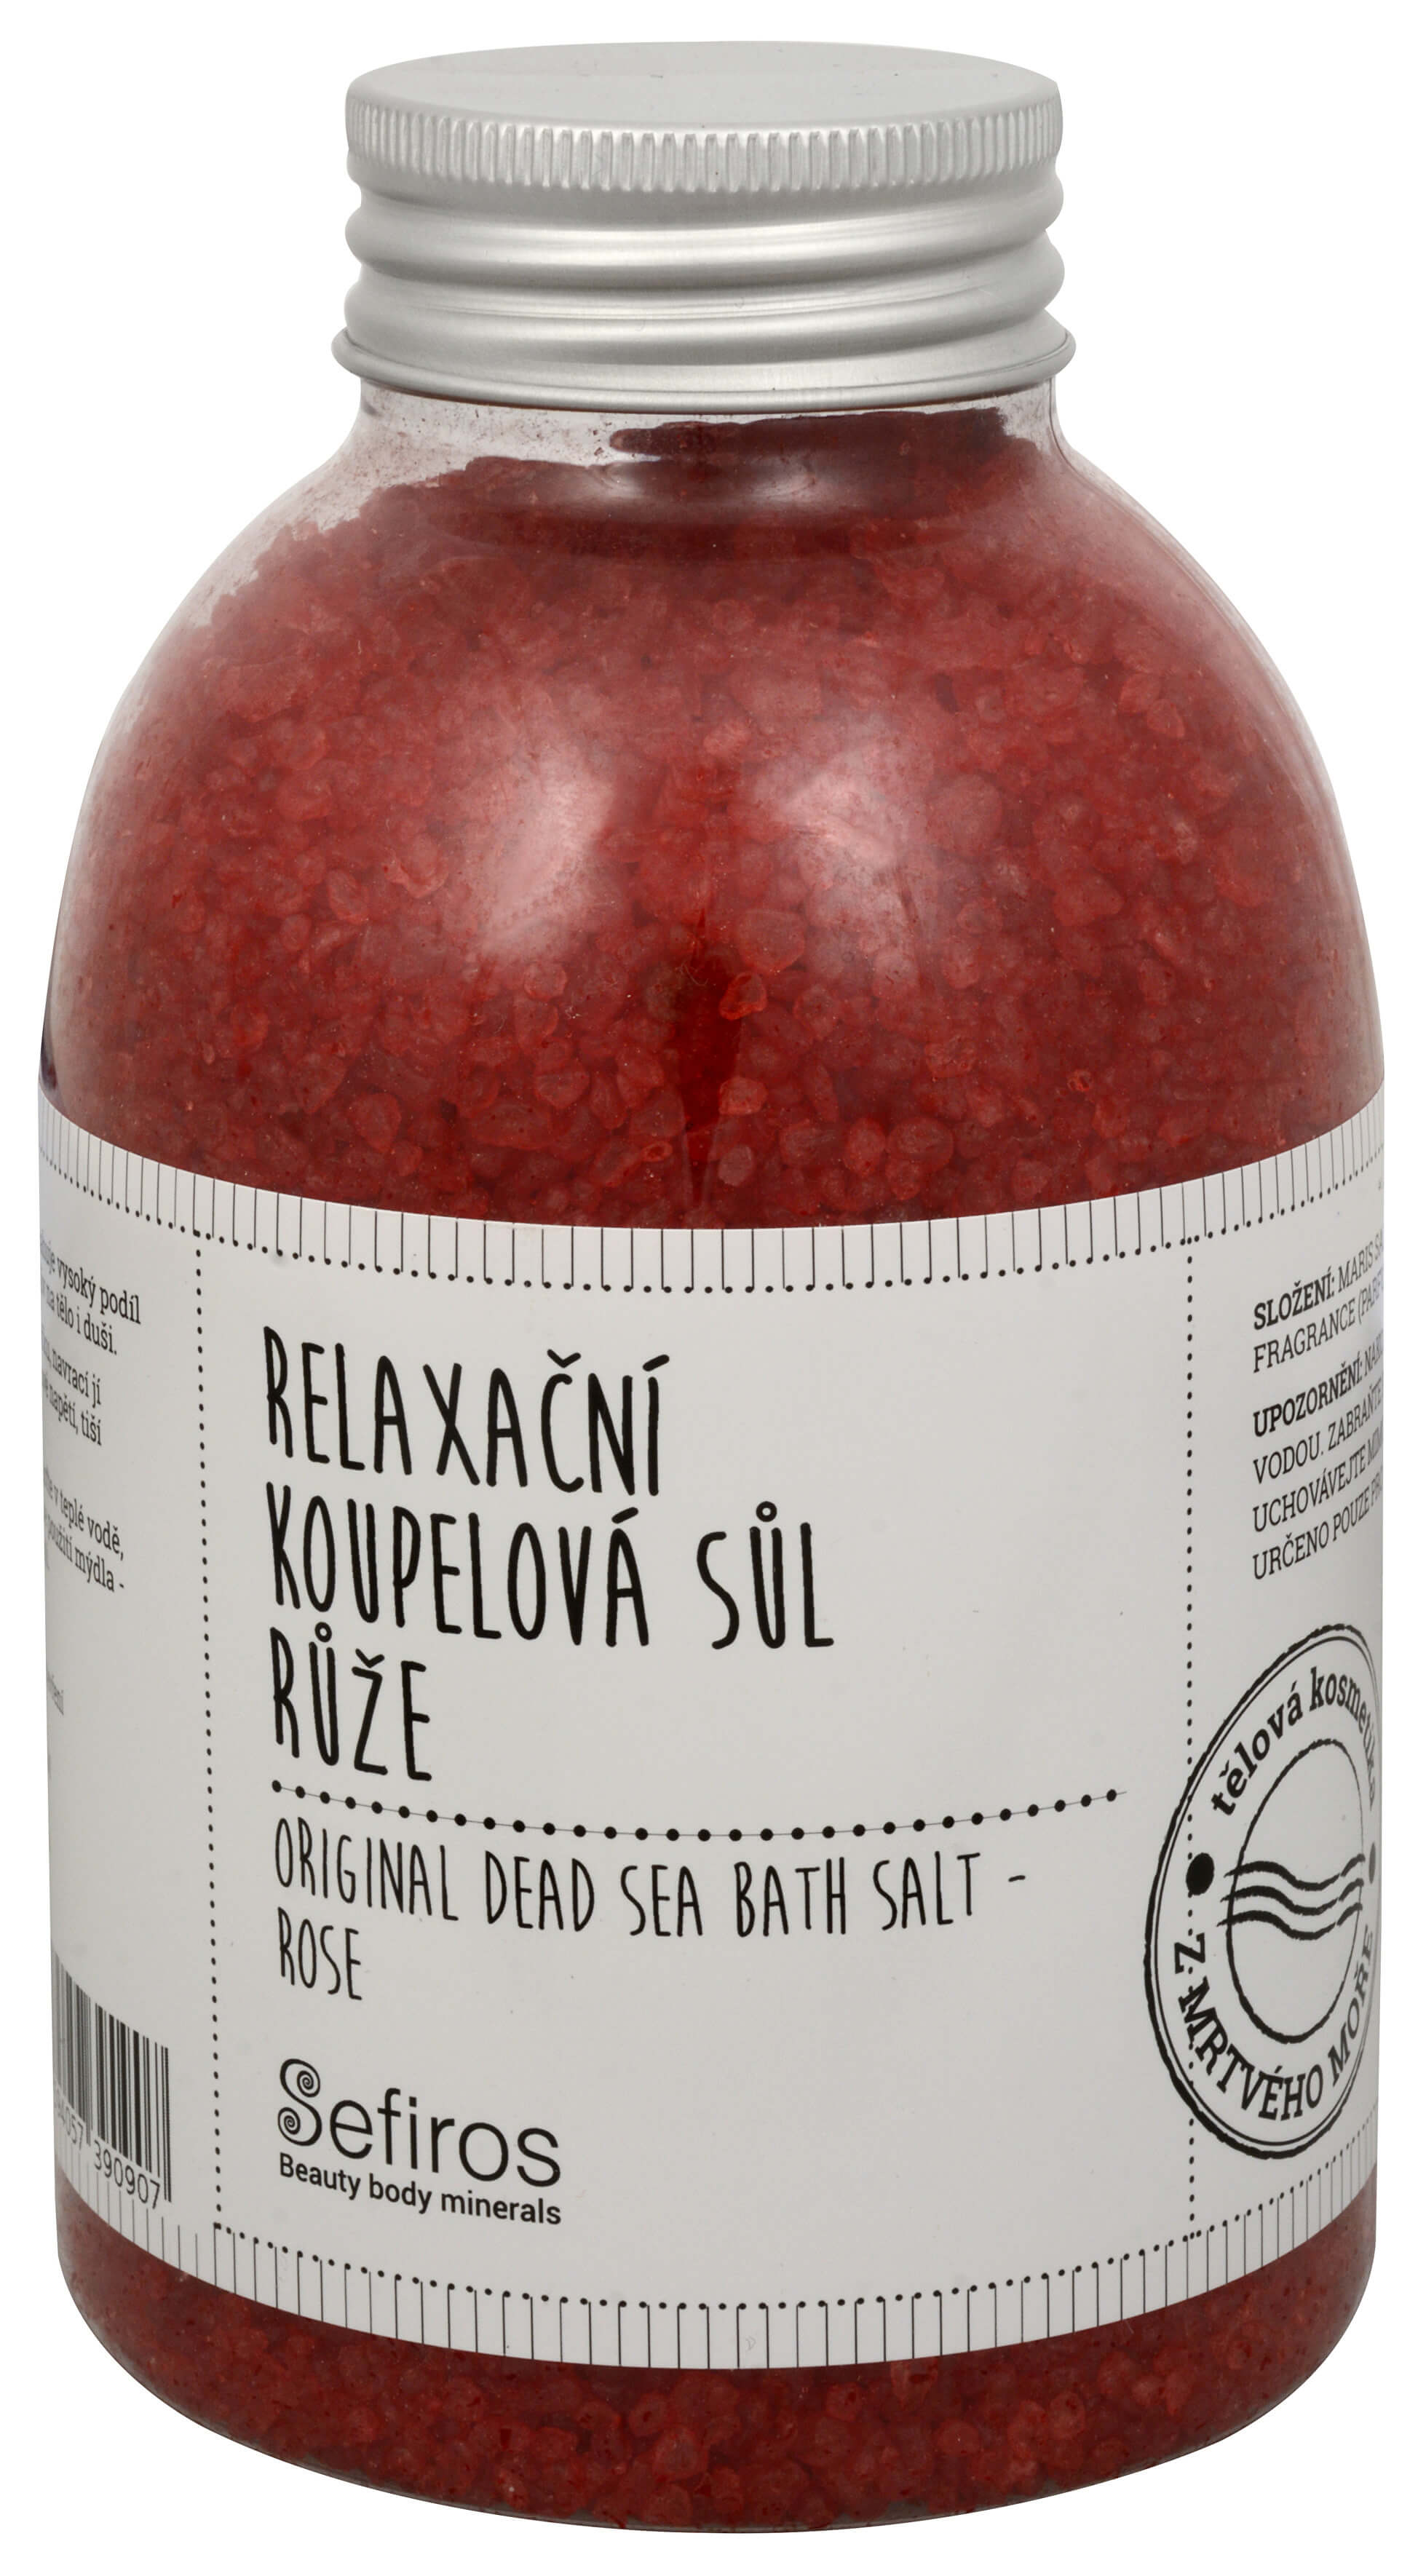 Zobrazit detail výrobku Sefiross Relaxační koupelová sůl Růže (Original Dead Sea Bath Salt) 500 g